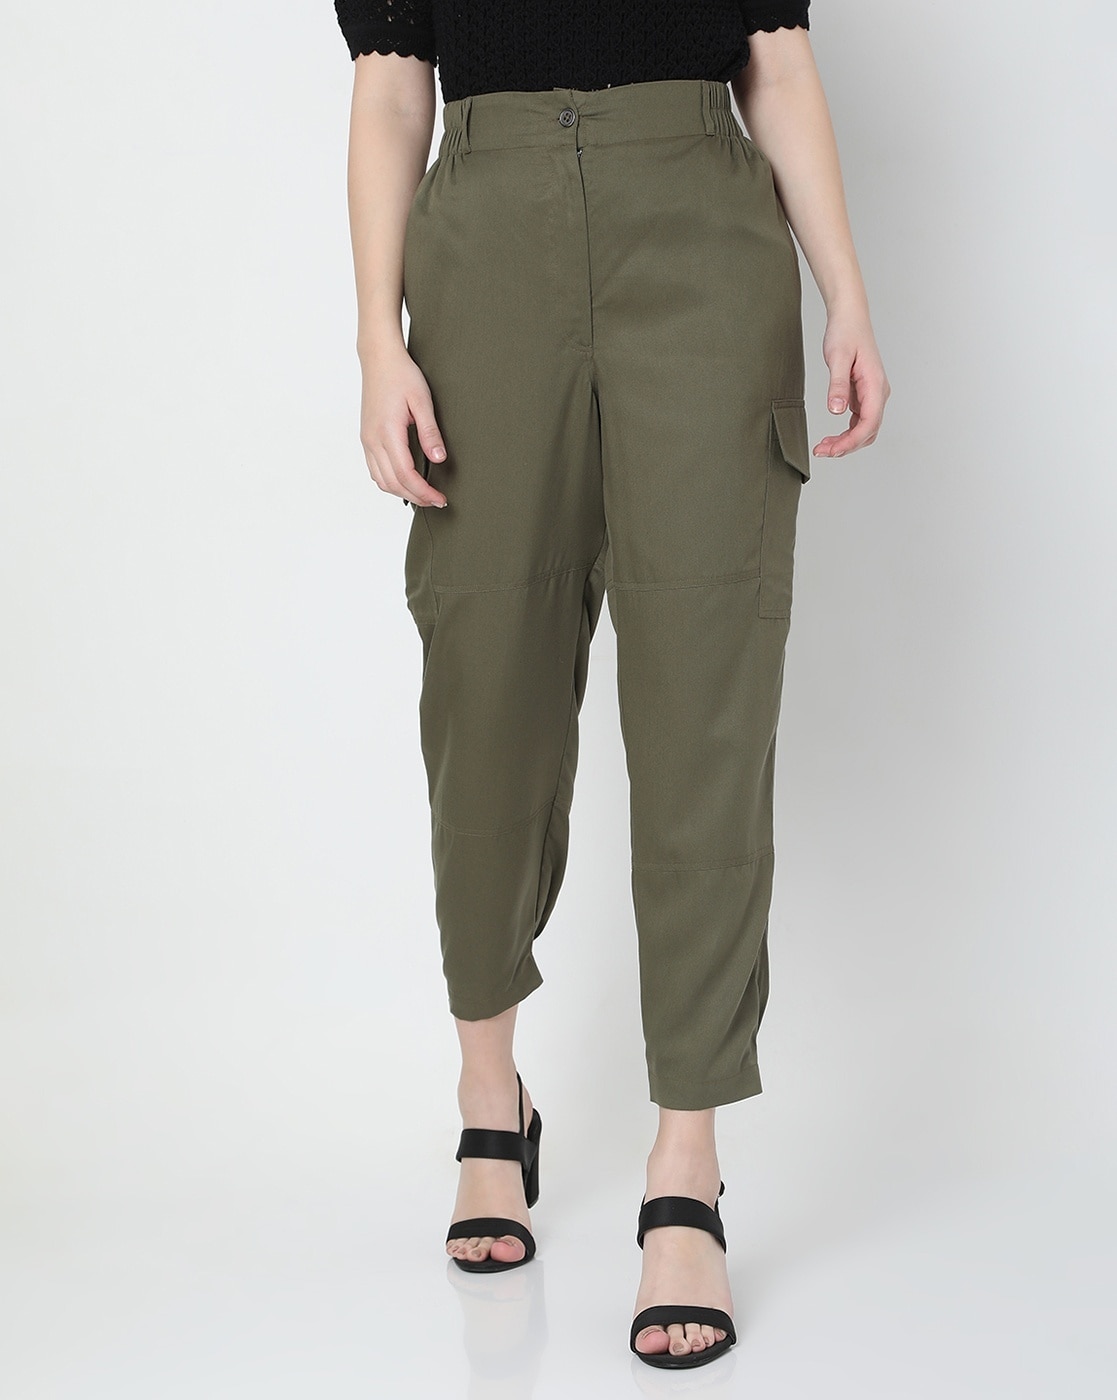 Buy Green Trousers & Pants for Women by Encrustd Online | Ajio.com